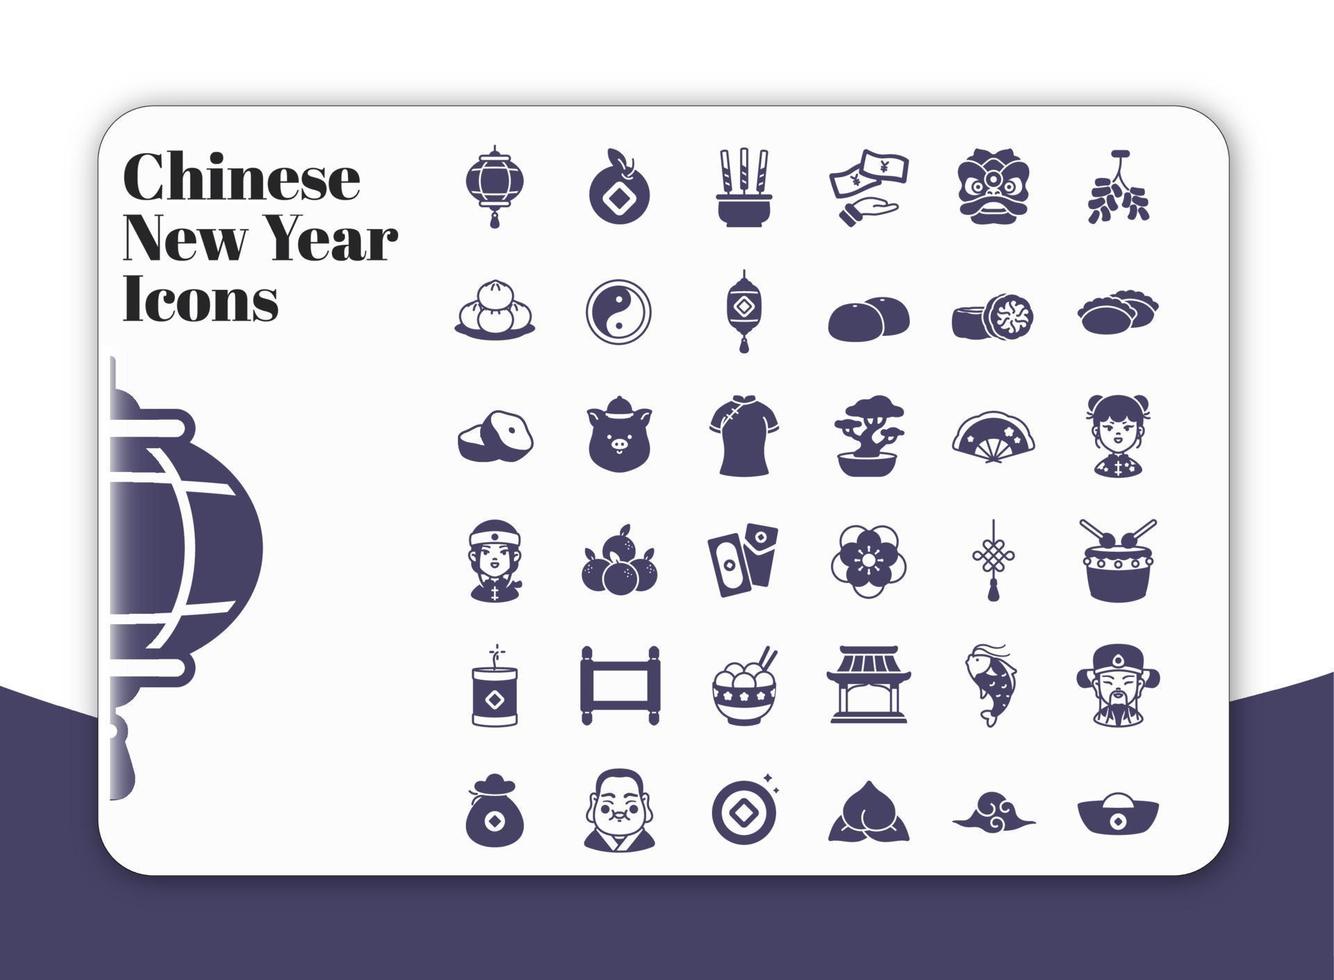 icônes du nouvel an chinois vecteur